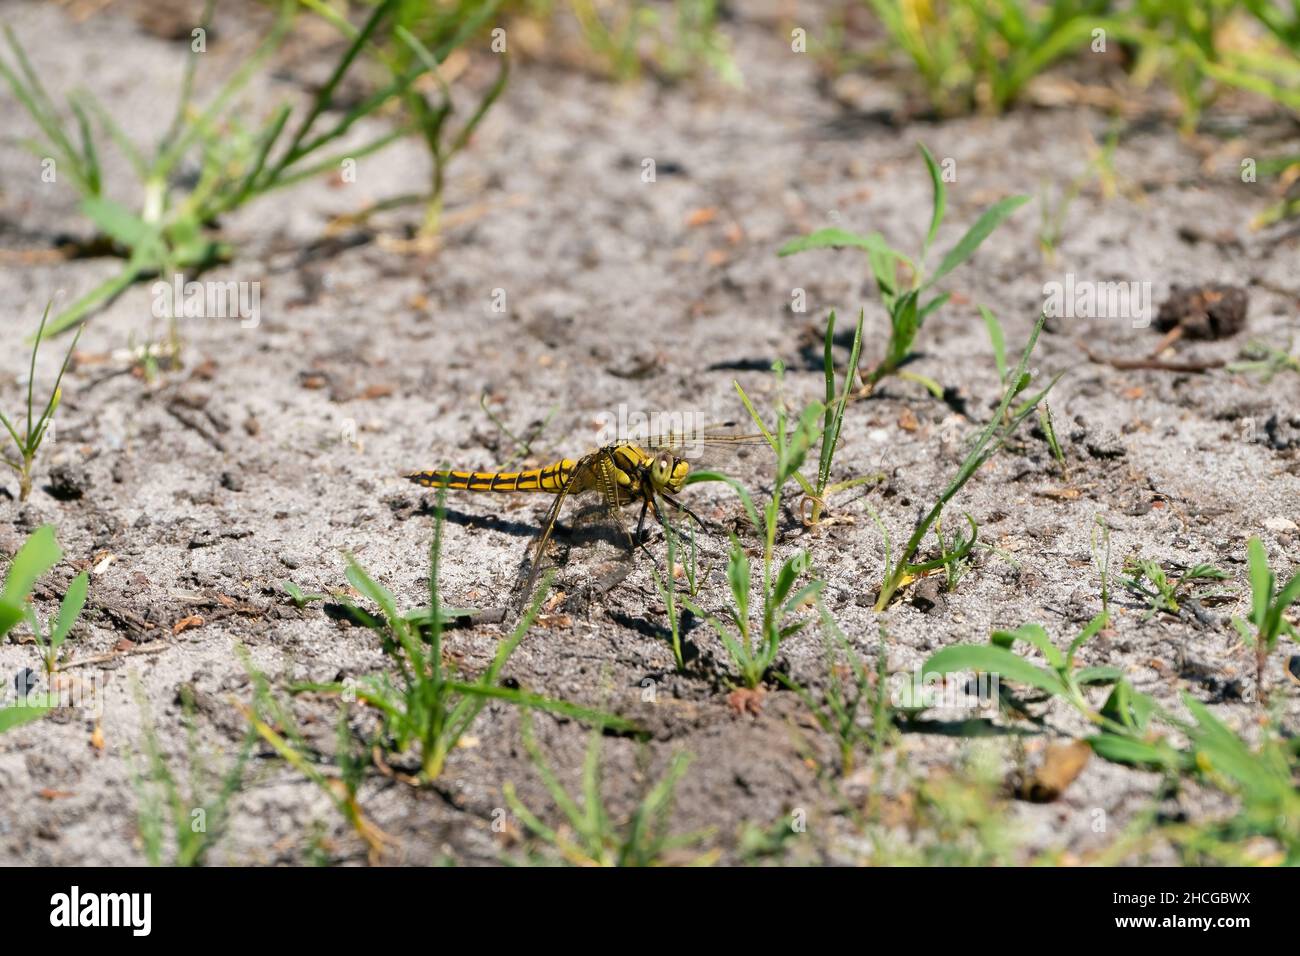 Una libellula colorata su un sentiero sabbioso. Guarda direttamente nella fotocamera, testa dettagliata. Isolato su sfondo naturale Foto Stock